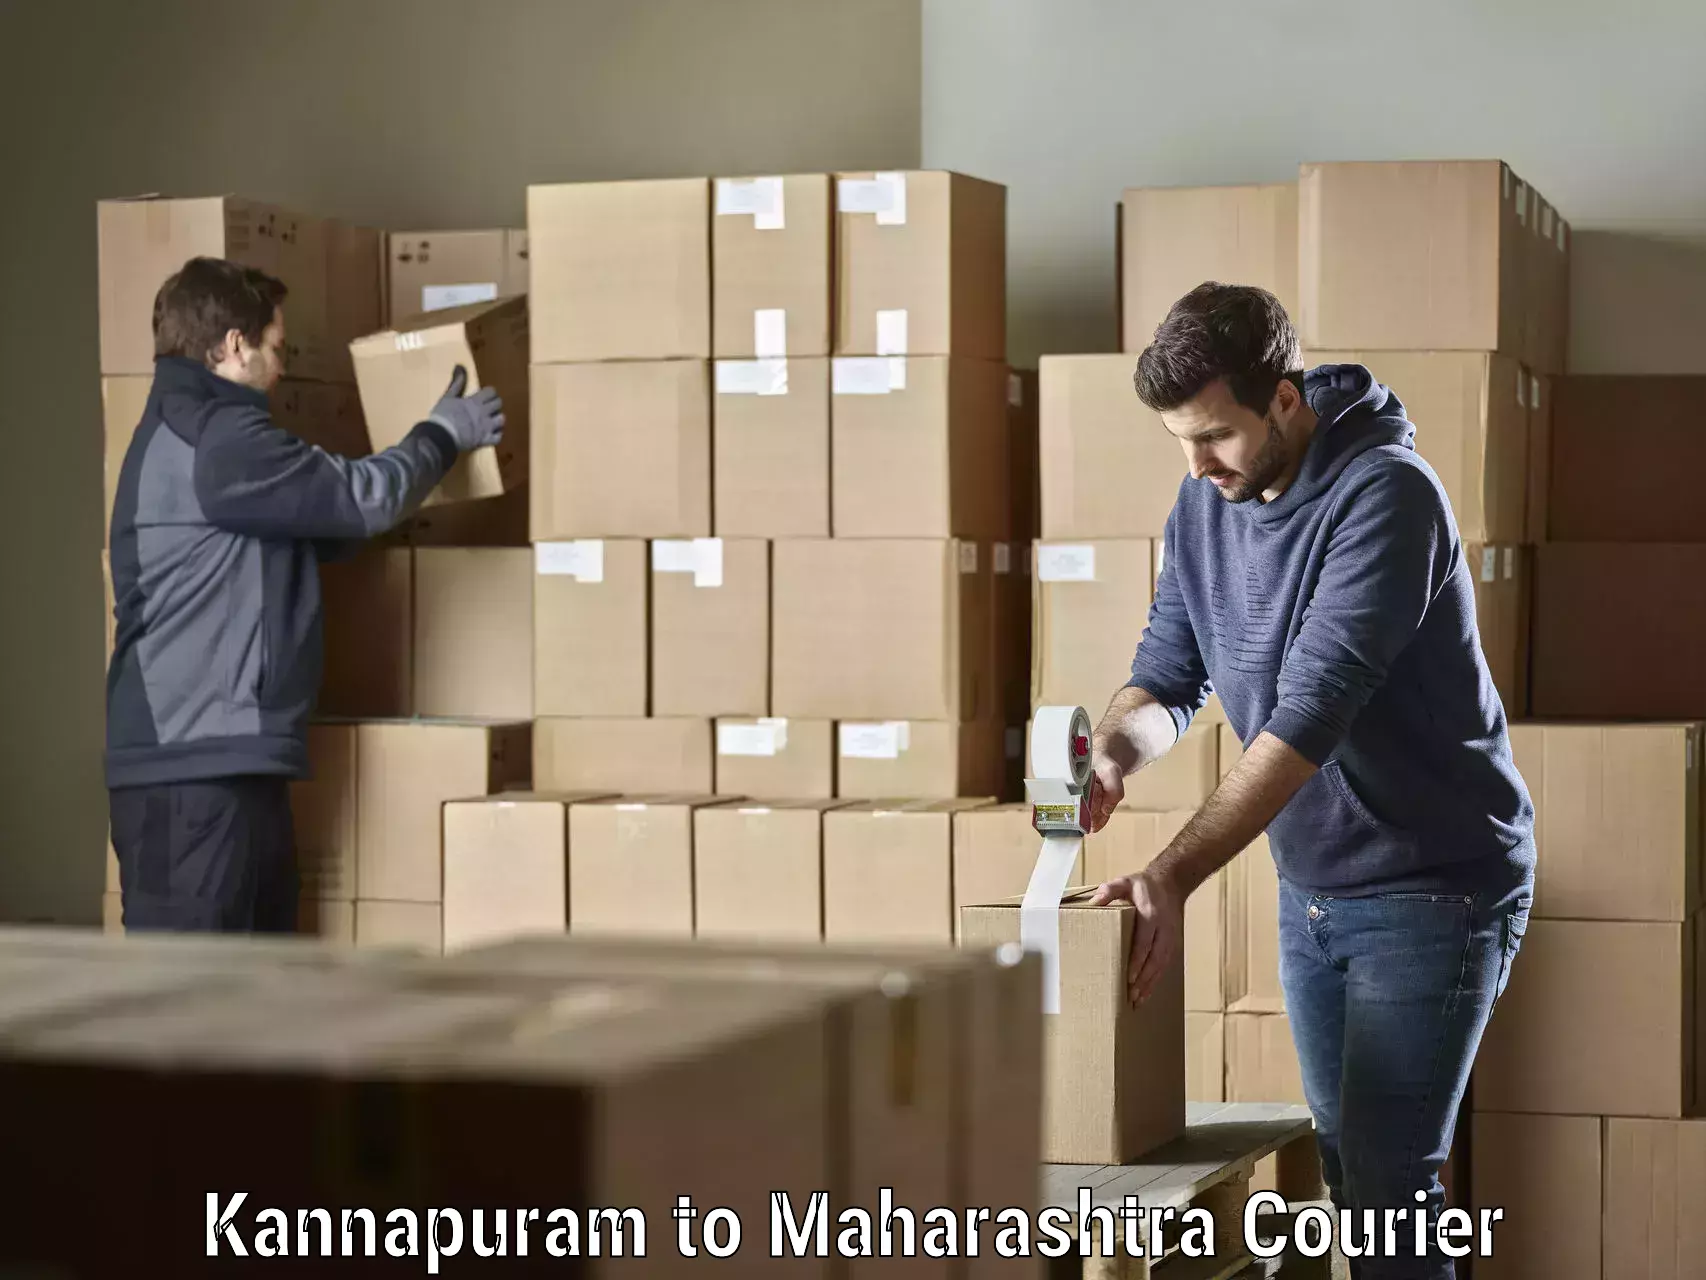 24/7 courier service Kannapuram to Maharashtra